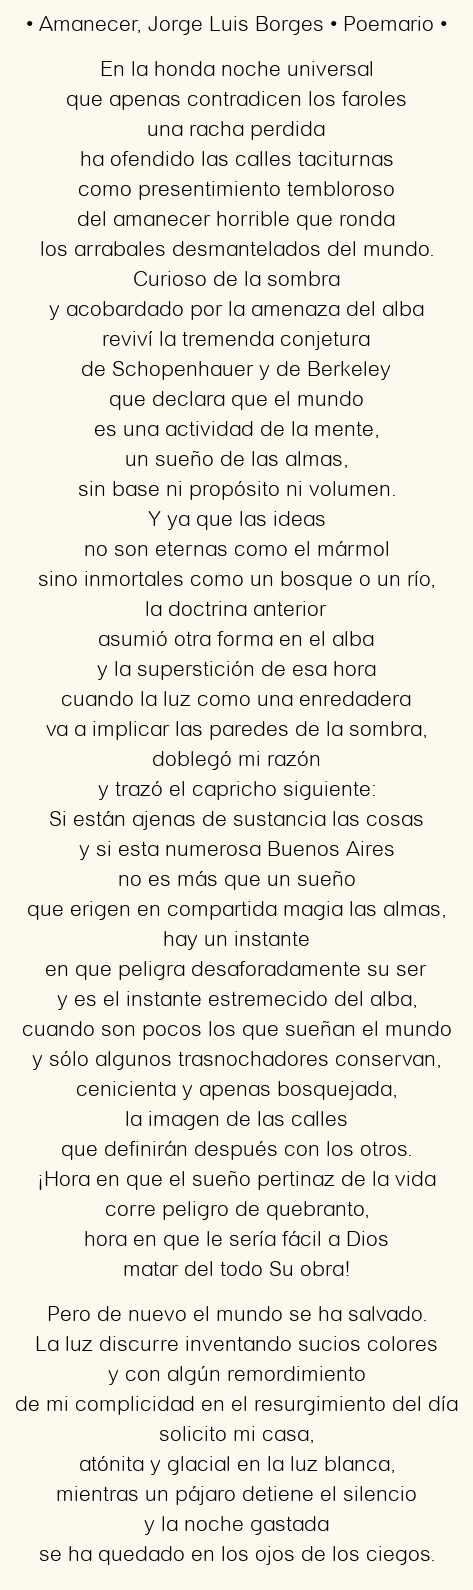 Imagen con el poema Amanecer, por Jorge Luis Borges